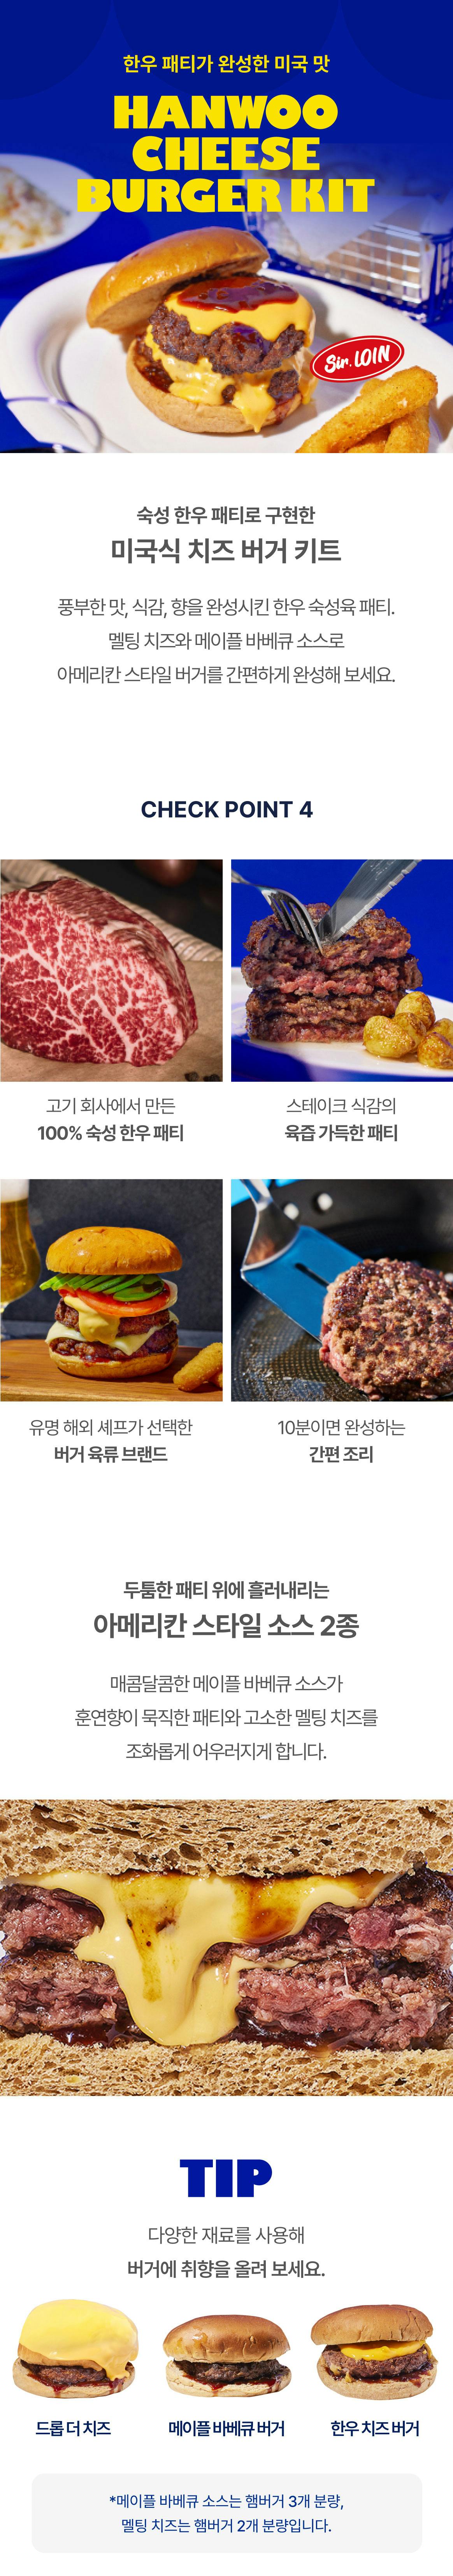 한우 치즈 버거 키트 2BOX - Product Detail Image - 0